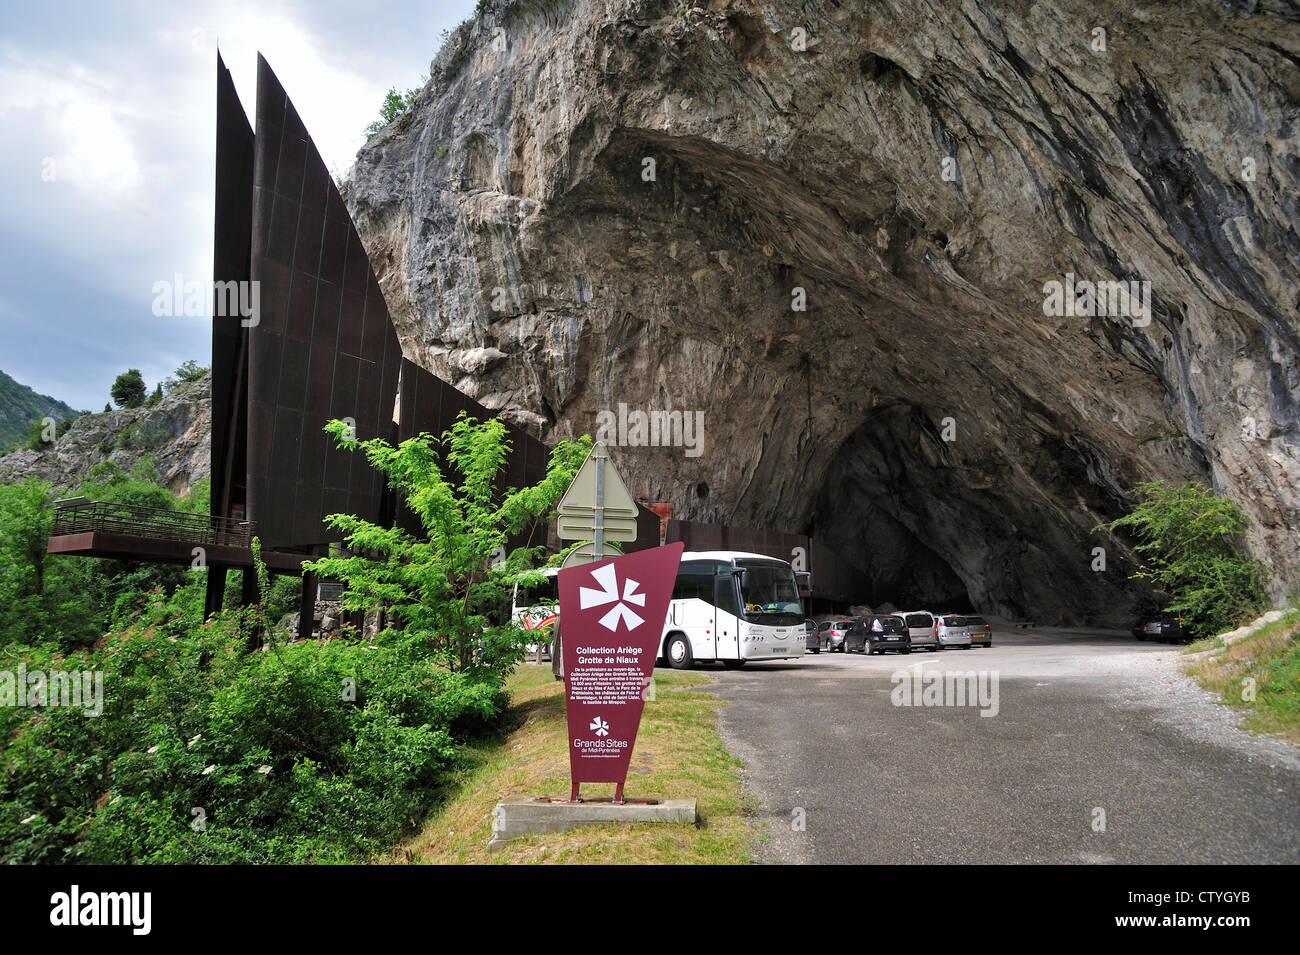 Entrada de la cueva de Niaux, famoso por sus pinturas rupestres de época Magdaleniense, Midi-Pyrénées, Pirineos, Francia Foto de stock